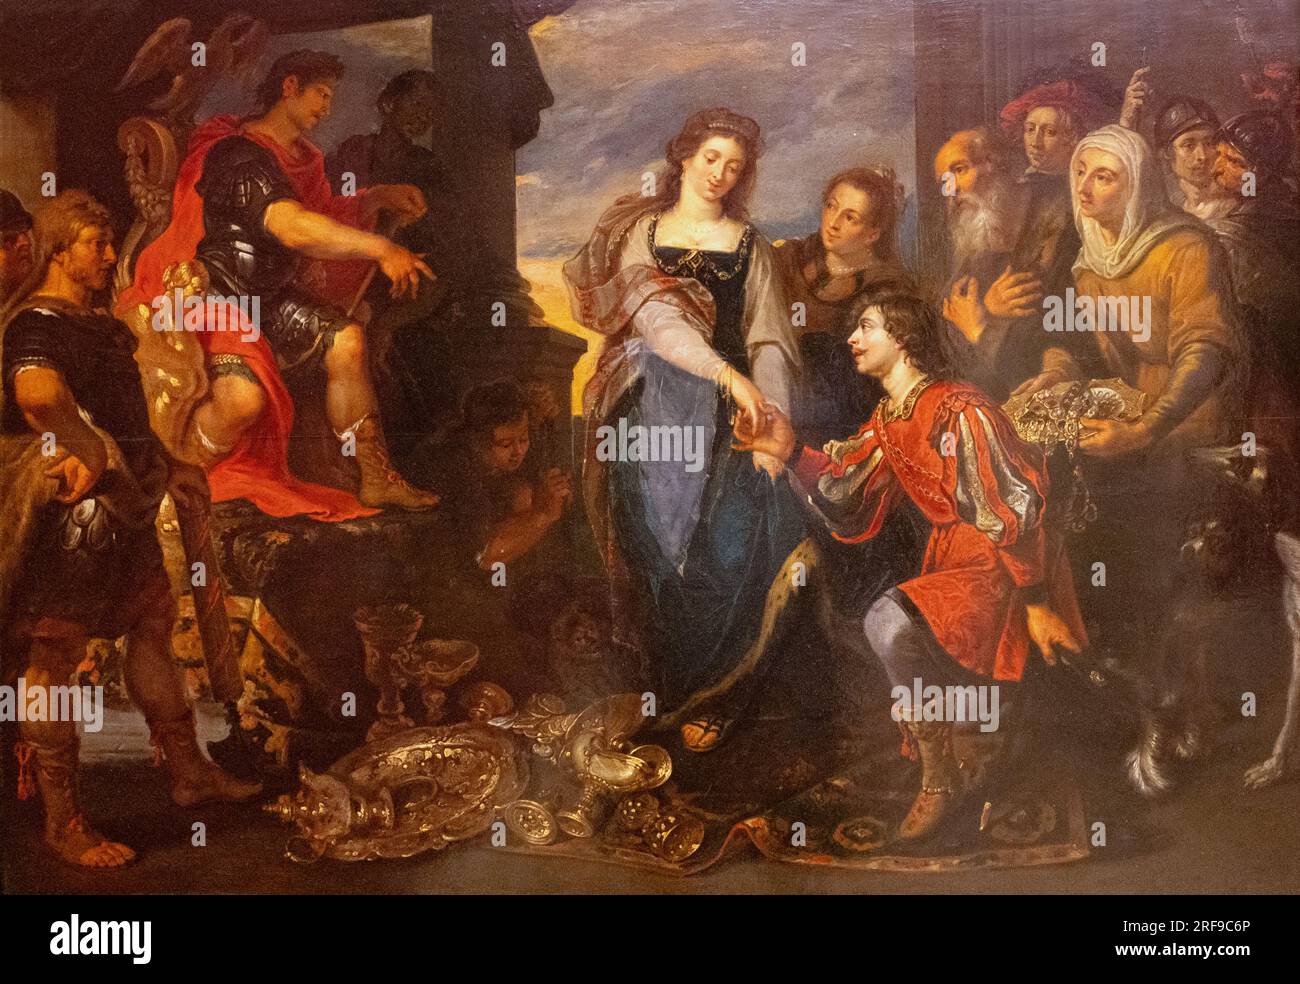 Pieter Van Mol painting; La Generosite de Scipion L'Africain - the generosity of Scipio the African; Flemish painter; 1599-1650; 17th century art. Stock Photo